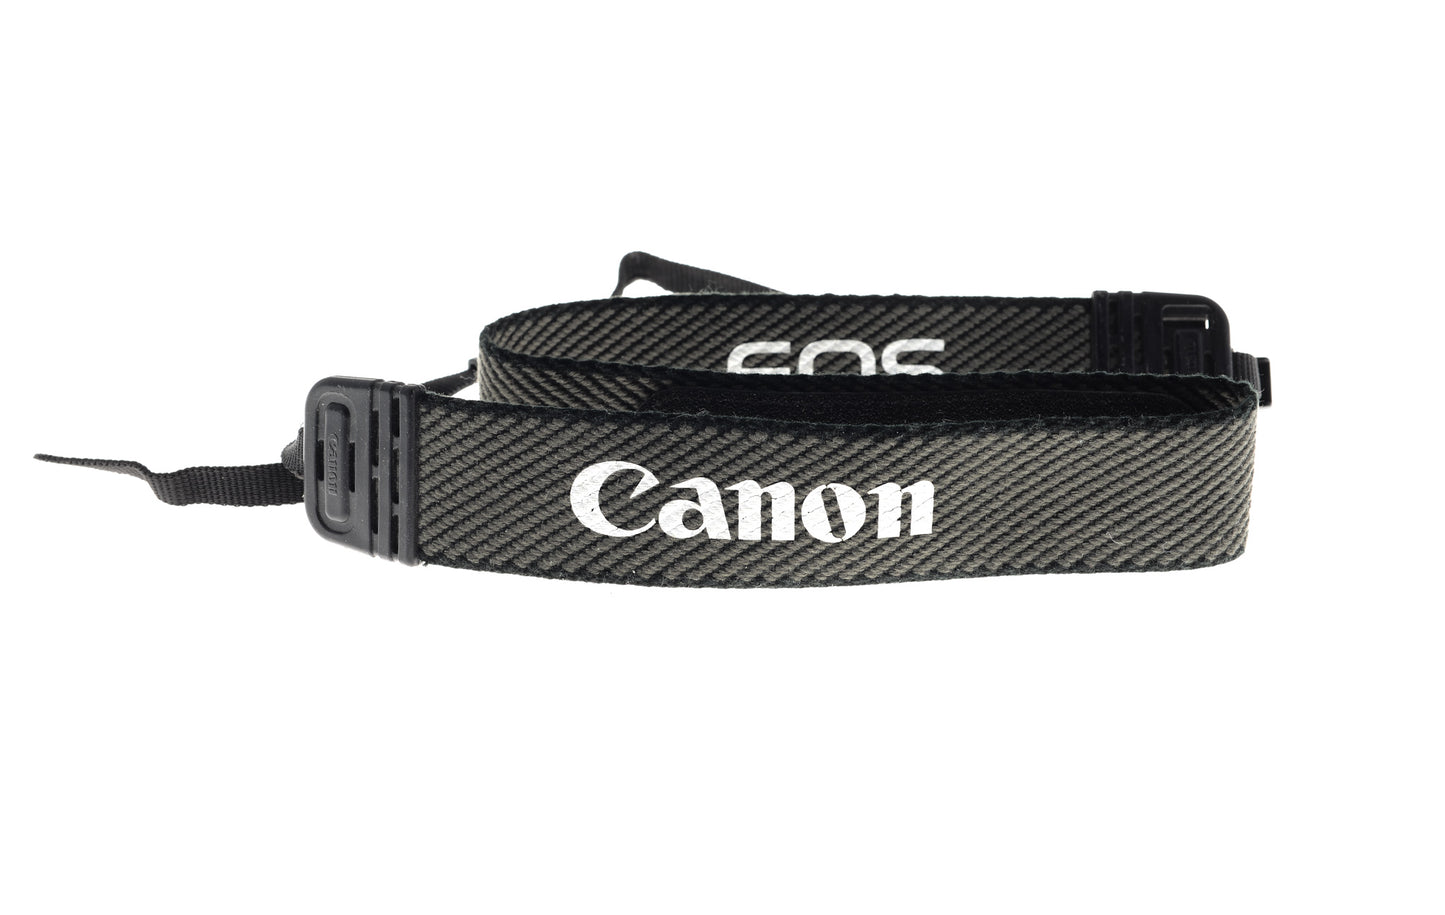 Canon EOS Fabric Neck Strap - Accessory